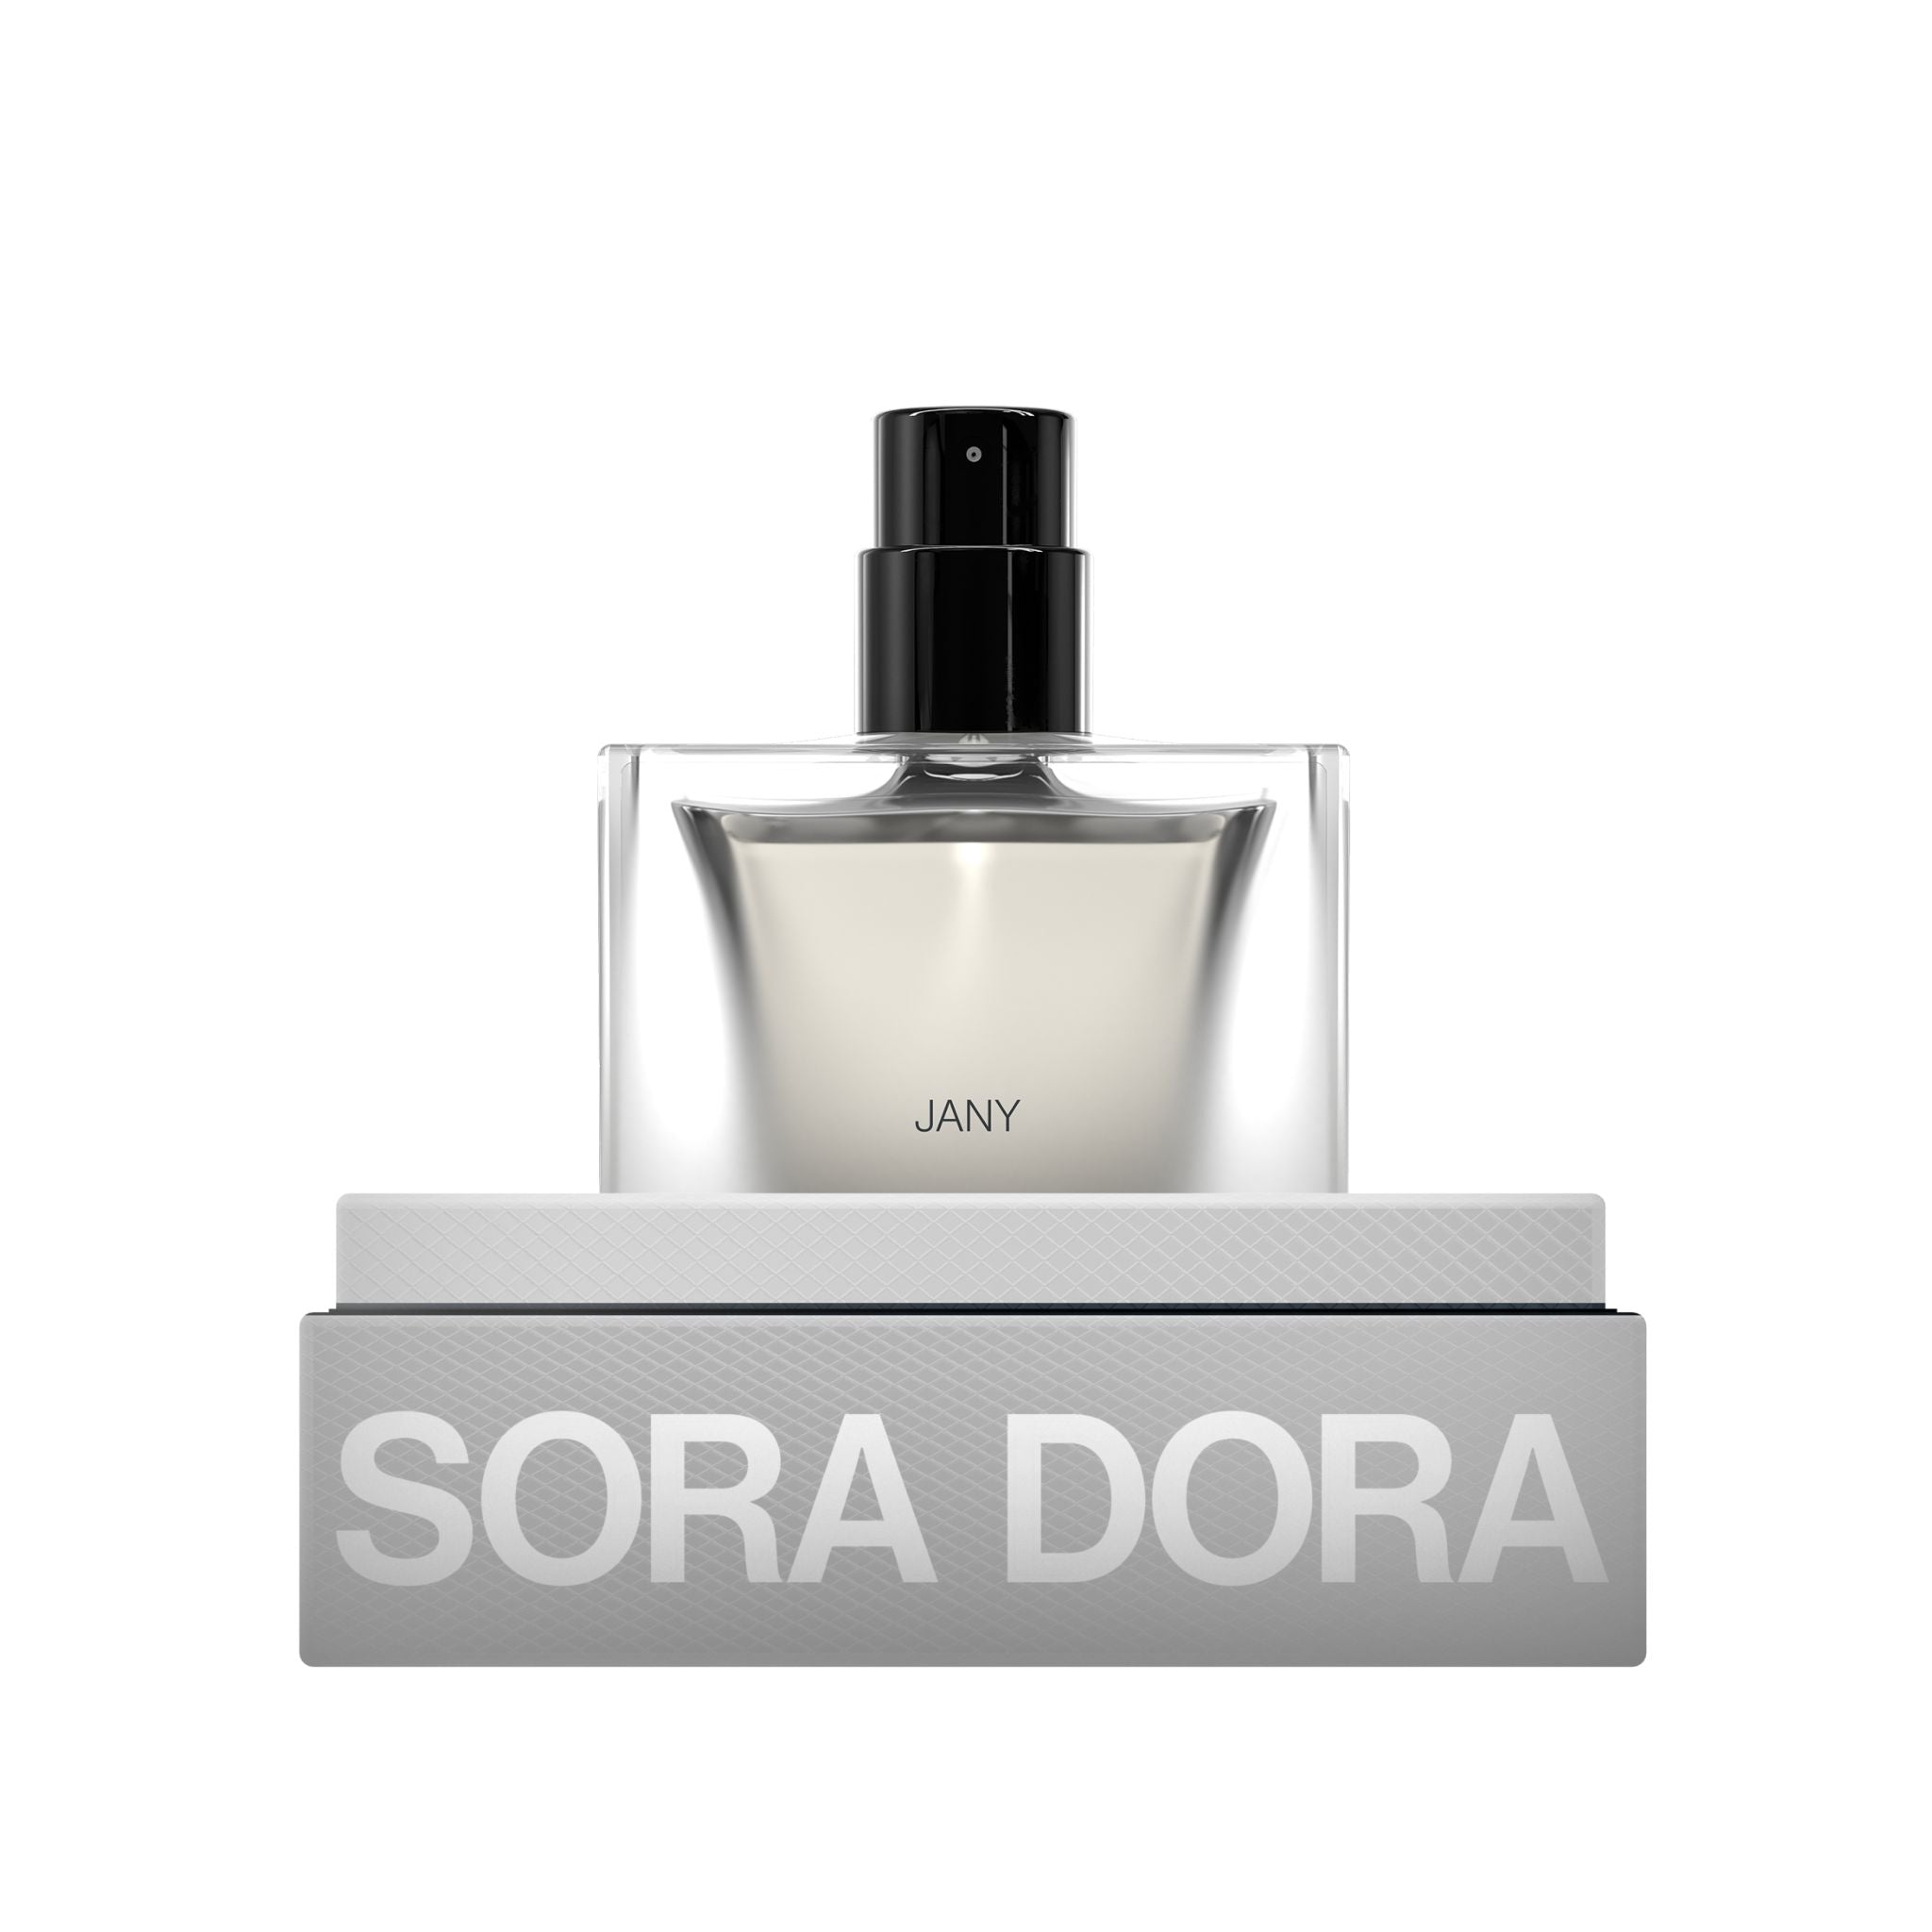 Jany Sora Dora Perfume